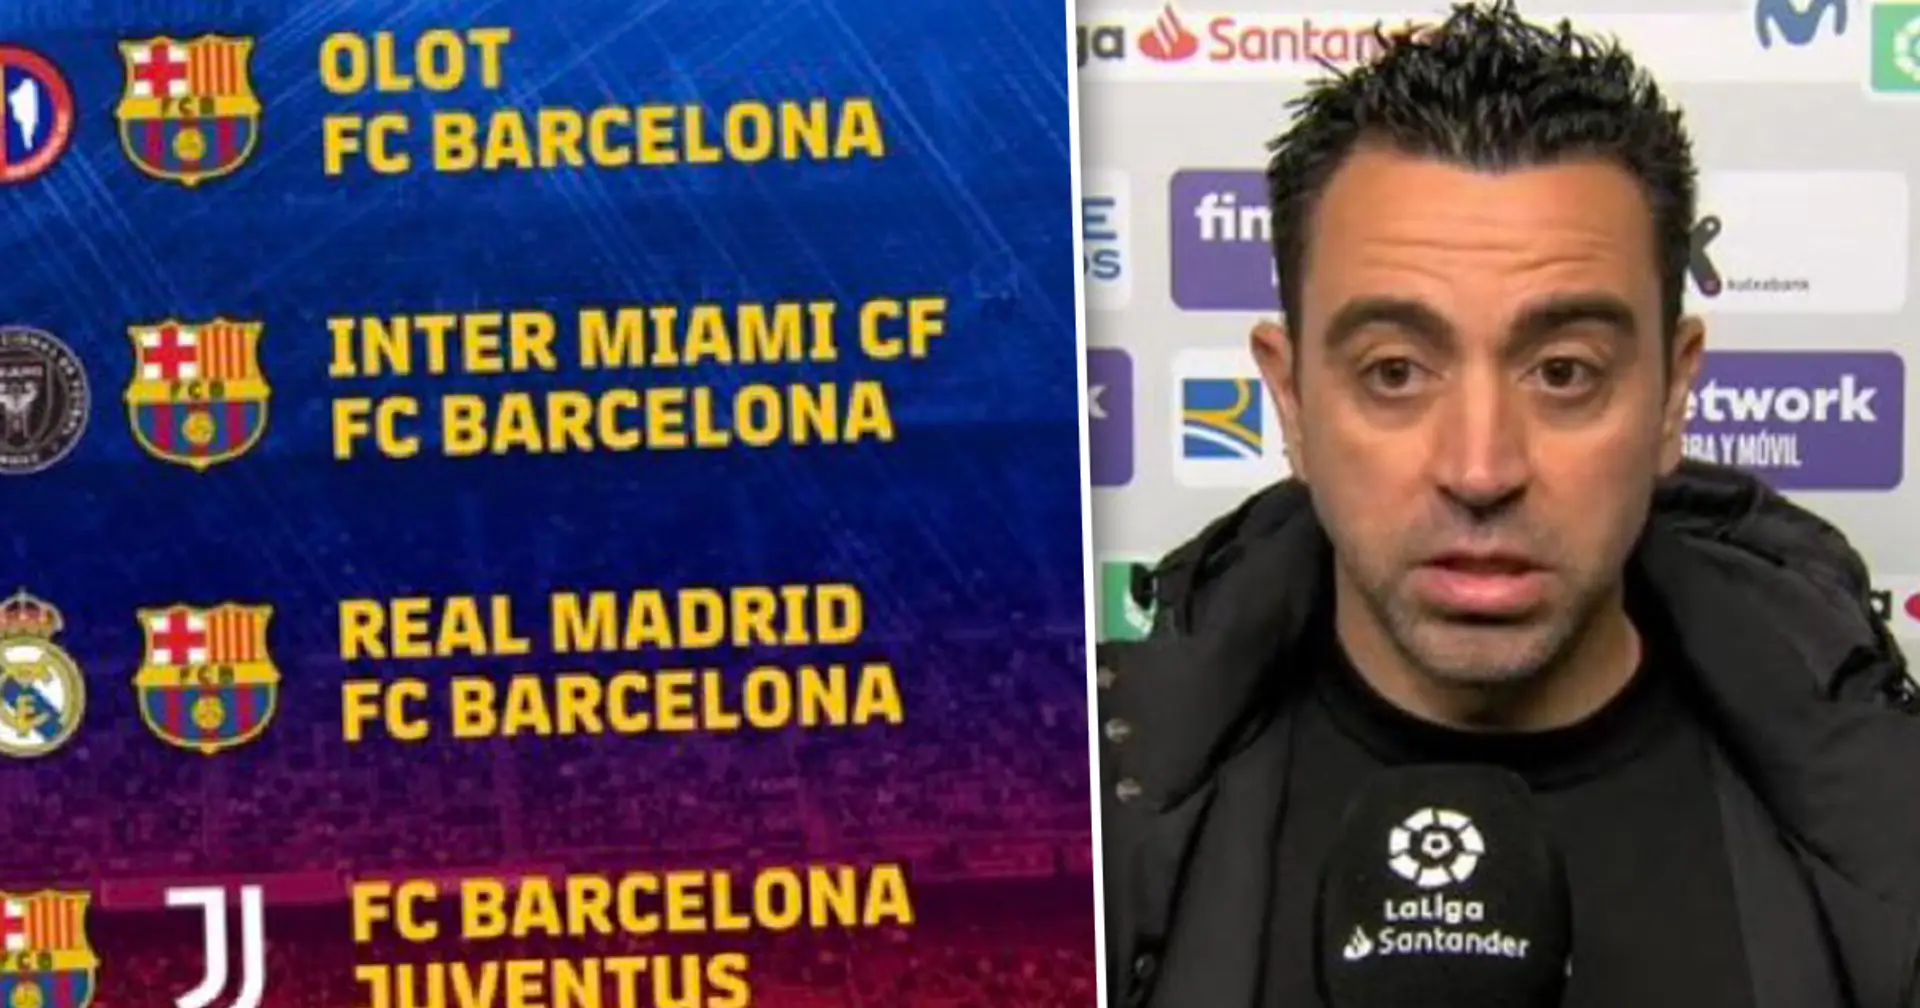 Le Real Madrid et de 5 autres adversaires du Barça en pré-saison confirmés